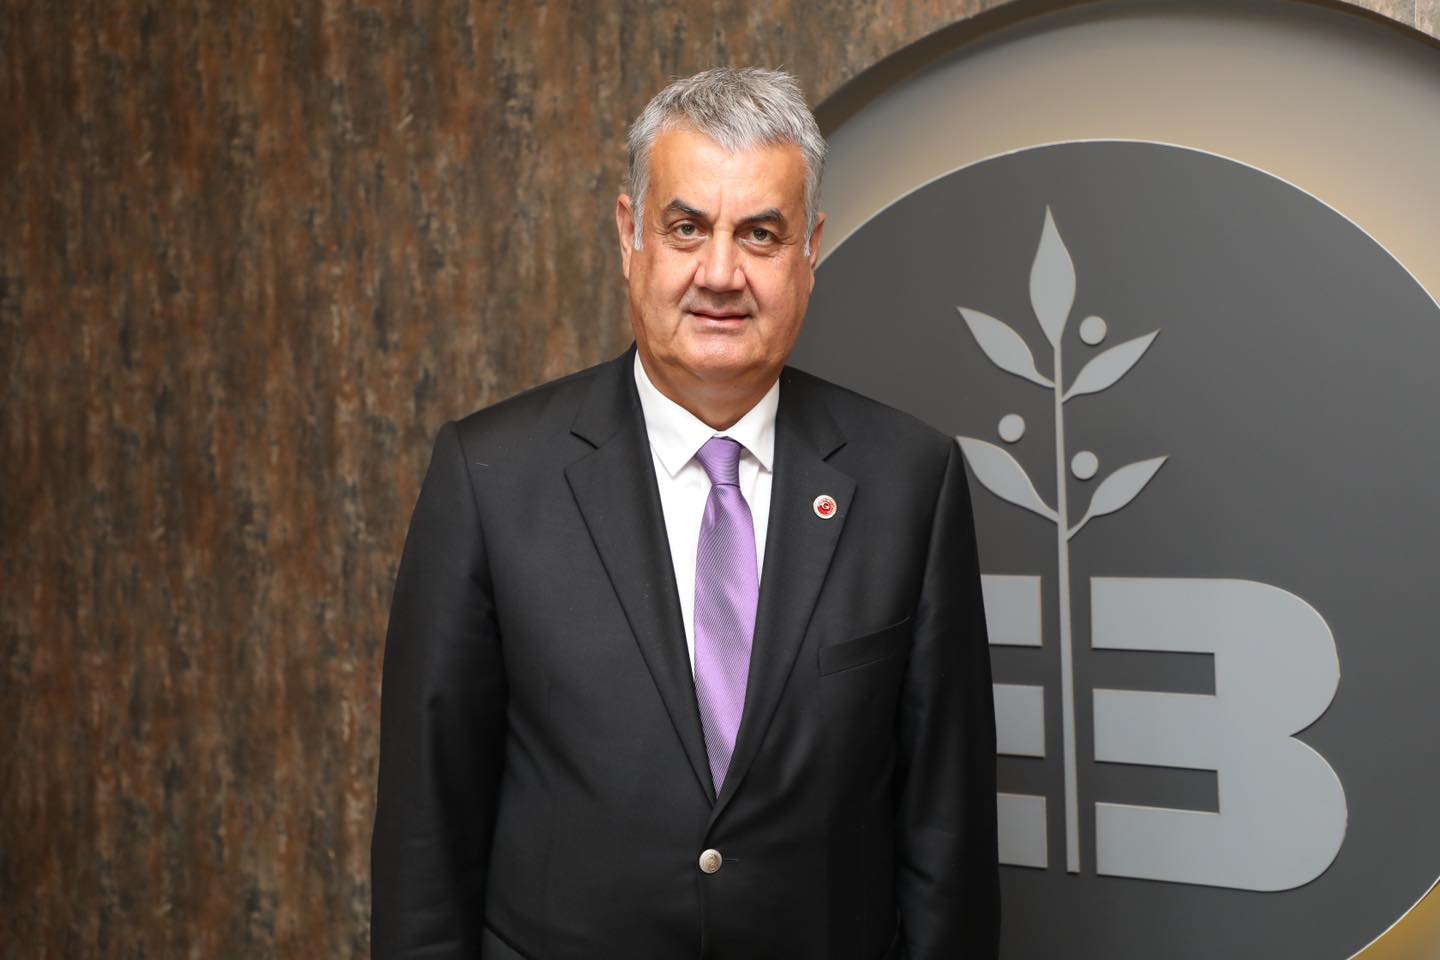 Edremit Belediye Meclis Üyesi Cavit Cebeci, Belediye Başkan Yardımcılığına atandı.